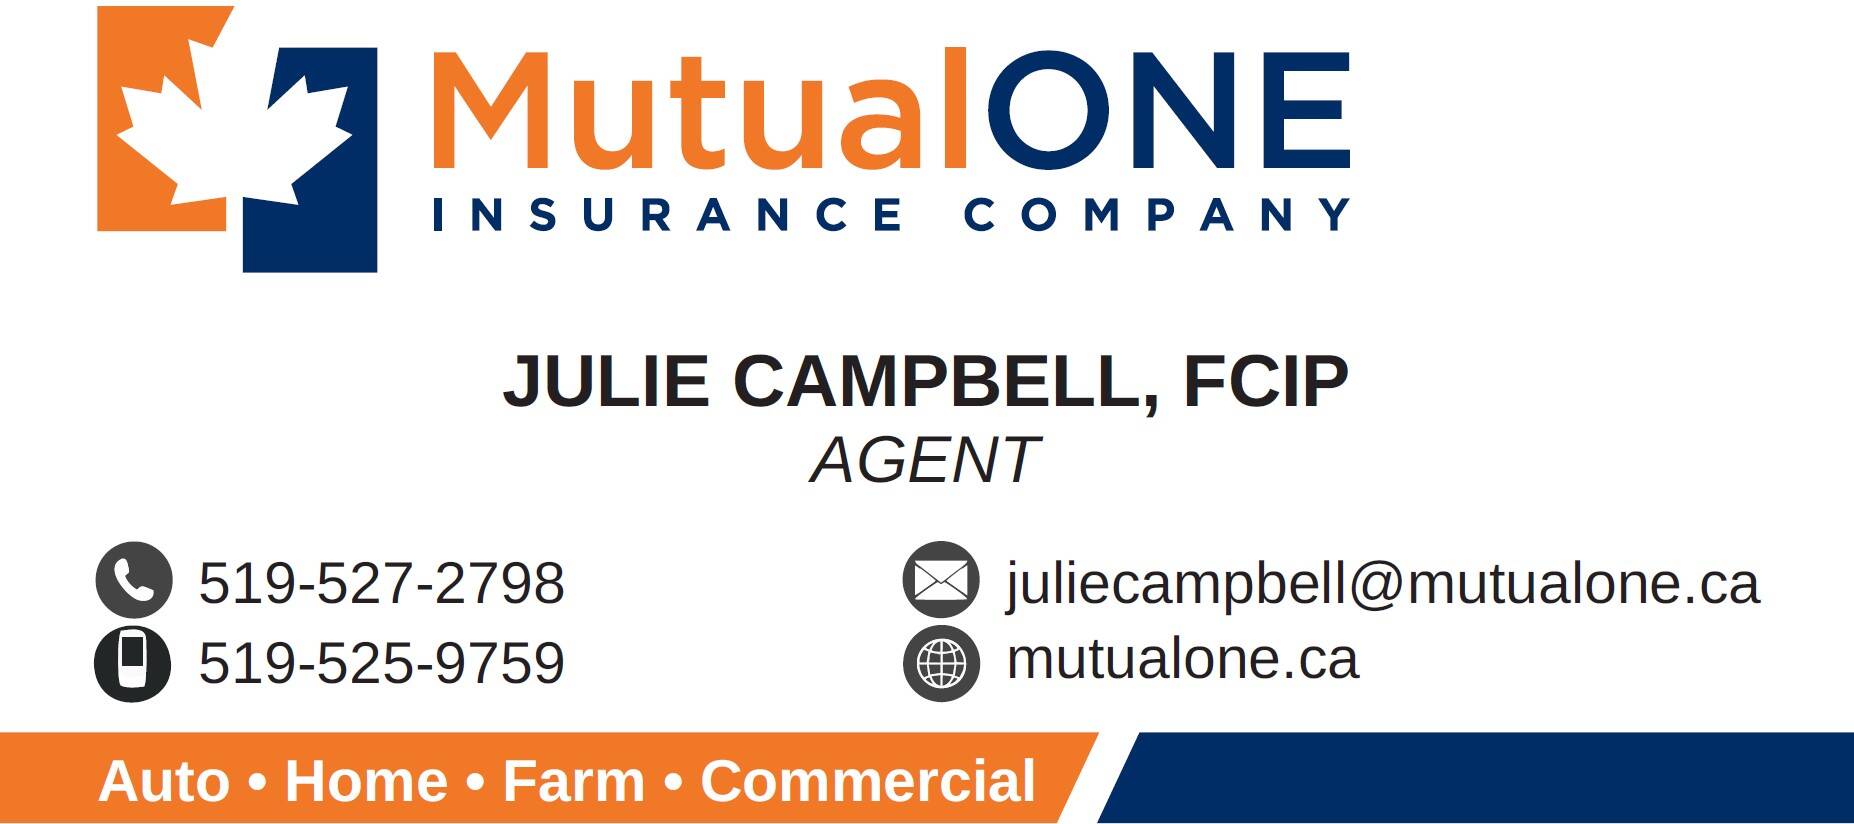 MutualONE Insurance - Julie Campbell